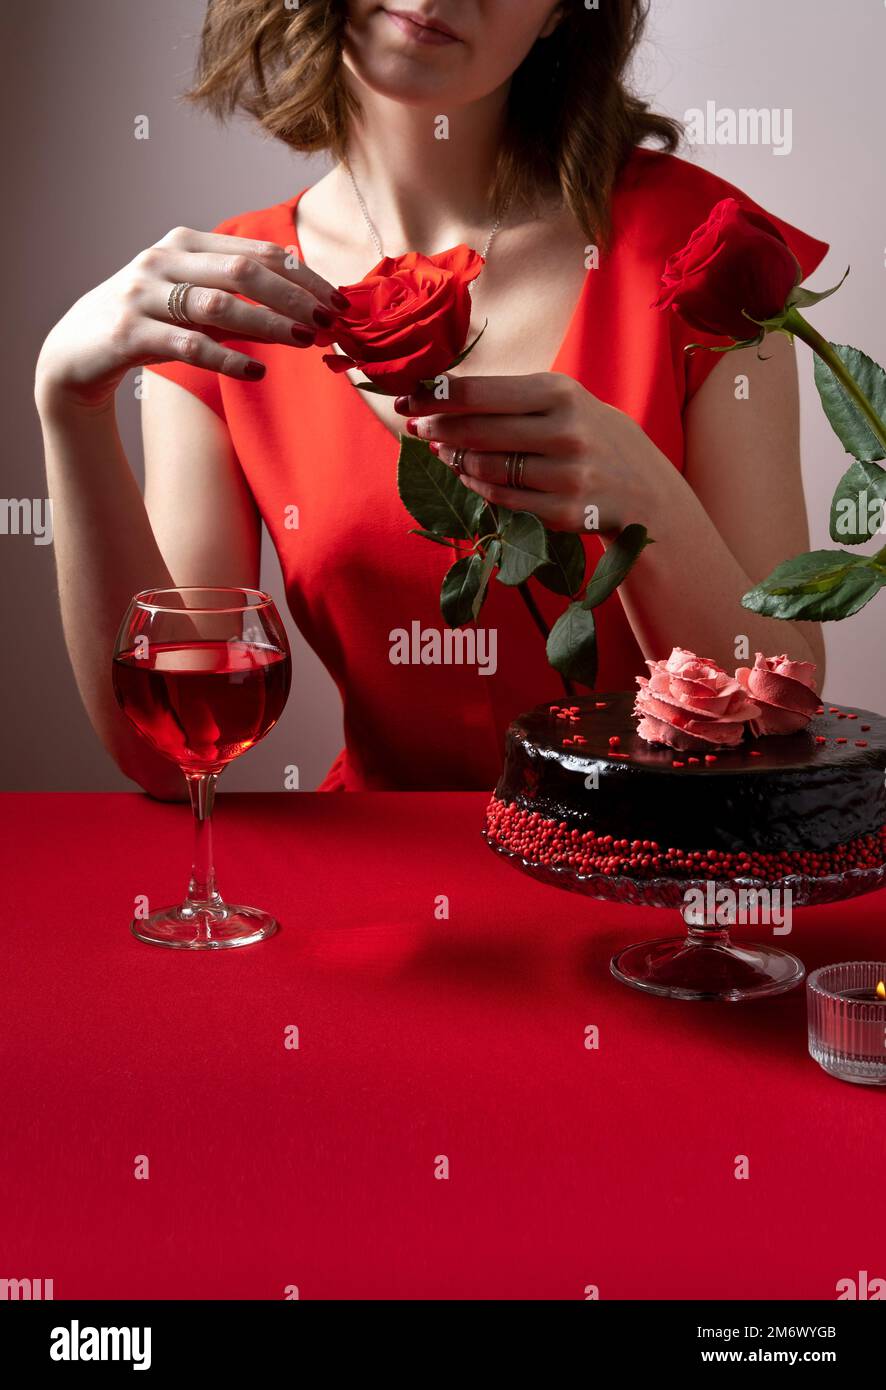 Donna in abito rosso con una mano che tiene una rosa rossa. Cena romantica a lume di candela. San Valentino. Impostazione tavolo festivo per San Valentino Foto Stock